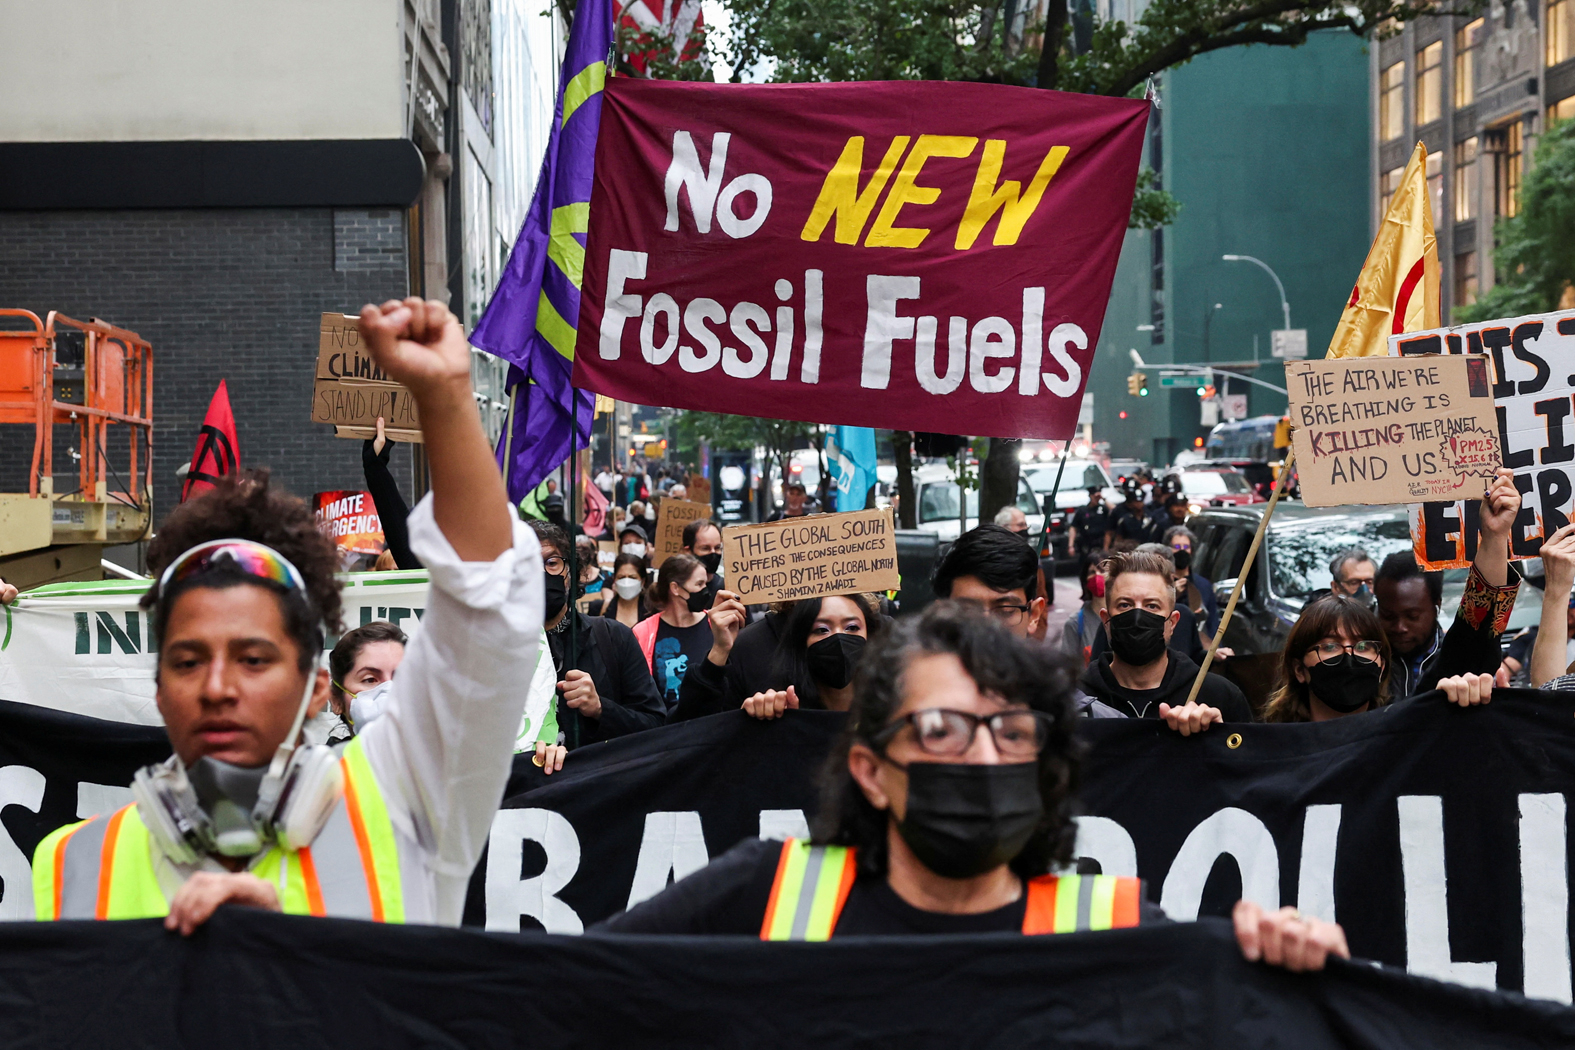 캐나다 산림지역의 산불 영향으로 지난 며칠간 뉴욕 일원의 대기질이 심각하게 악화했다 개선된 가운데, 환경운동가들이 8일 뉴욕에서 기후변화 문제에 대한 대응이 절실하다고 외치며 시위를 벌이고 있다. [로이터]